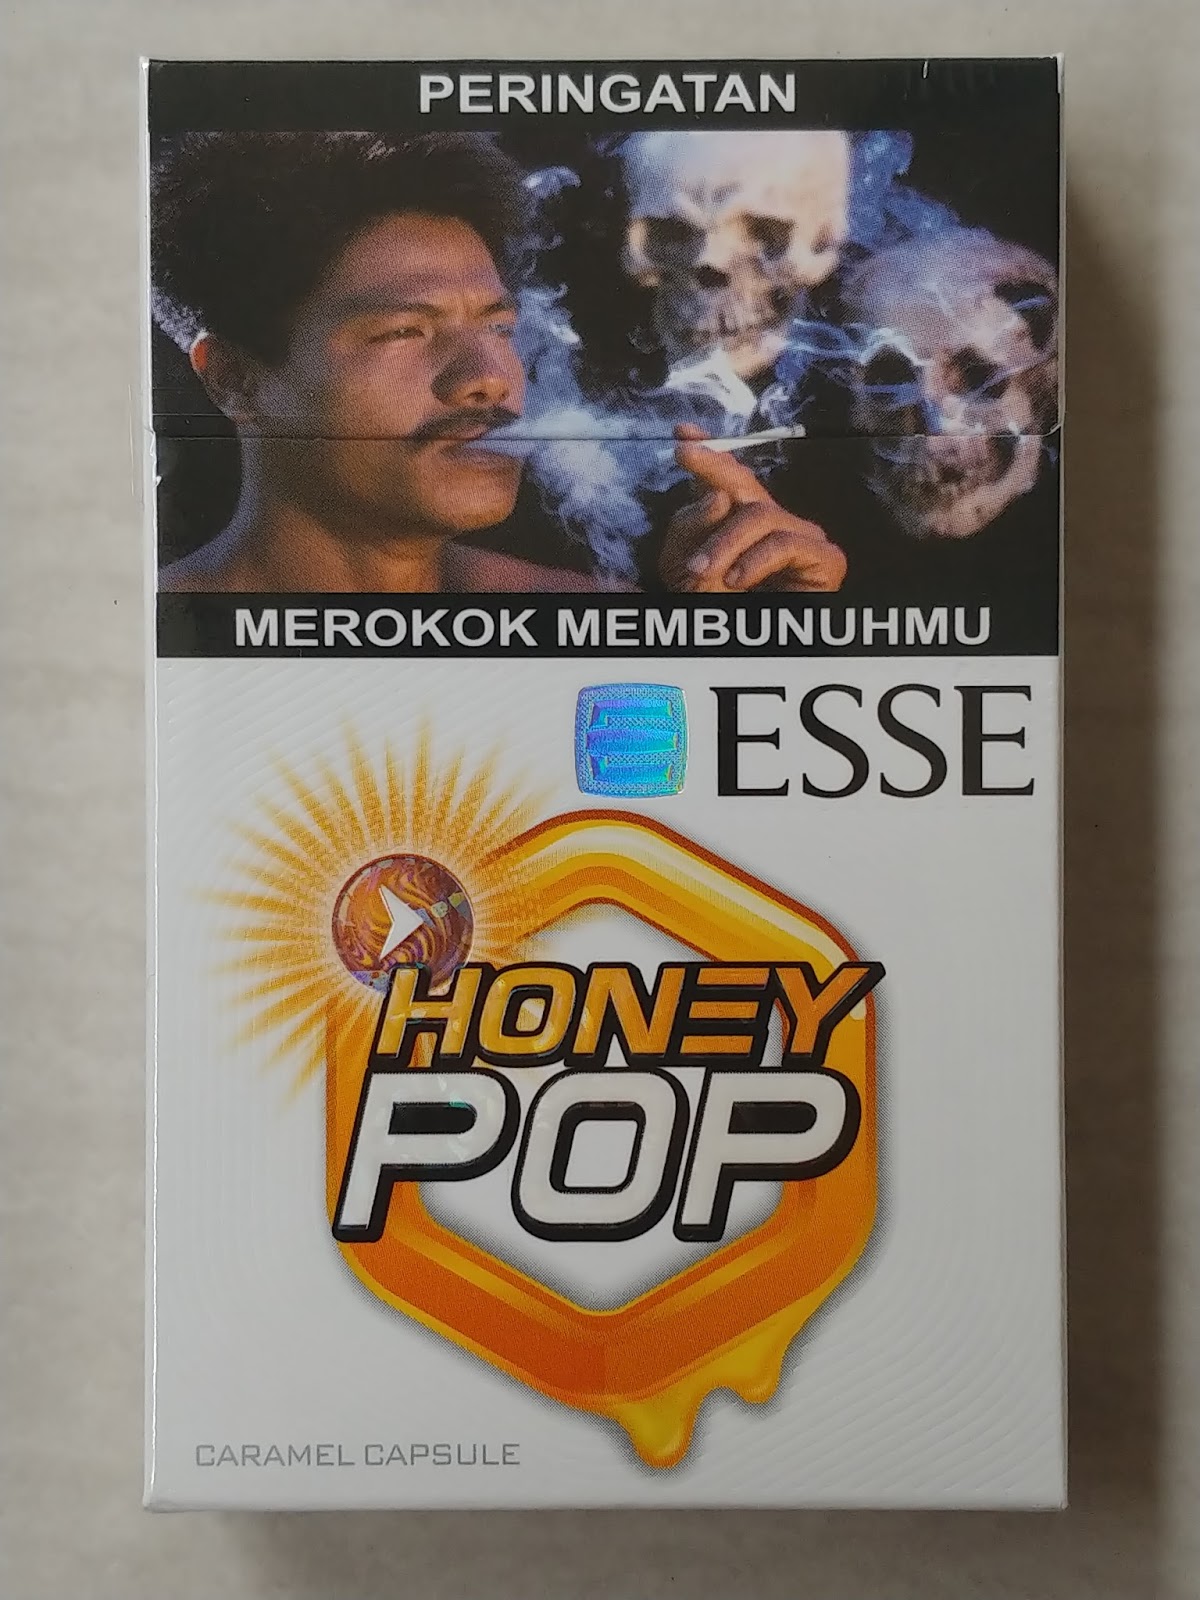 ESSE POP HONEY Clove Cigarettes 10 cartons - Click Image to Close